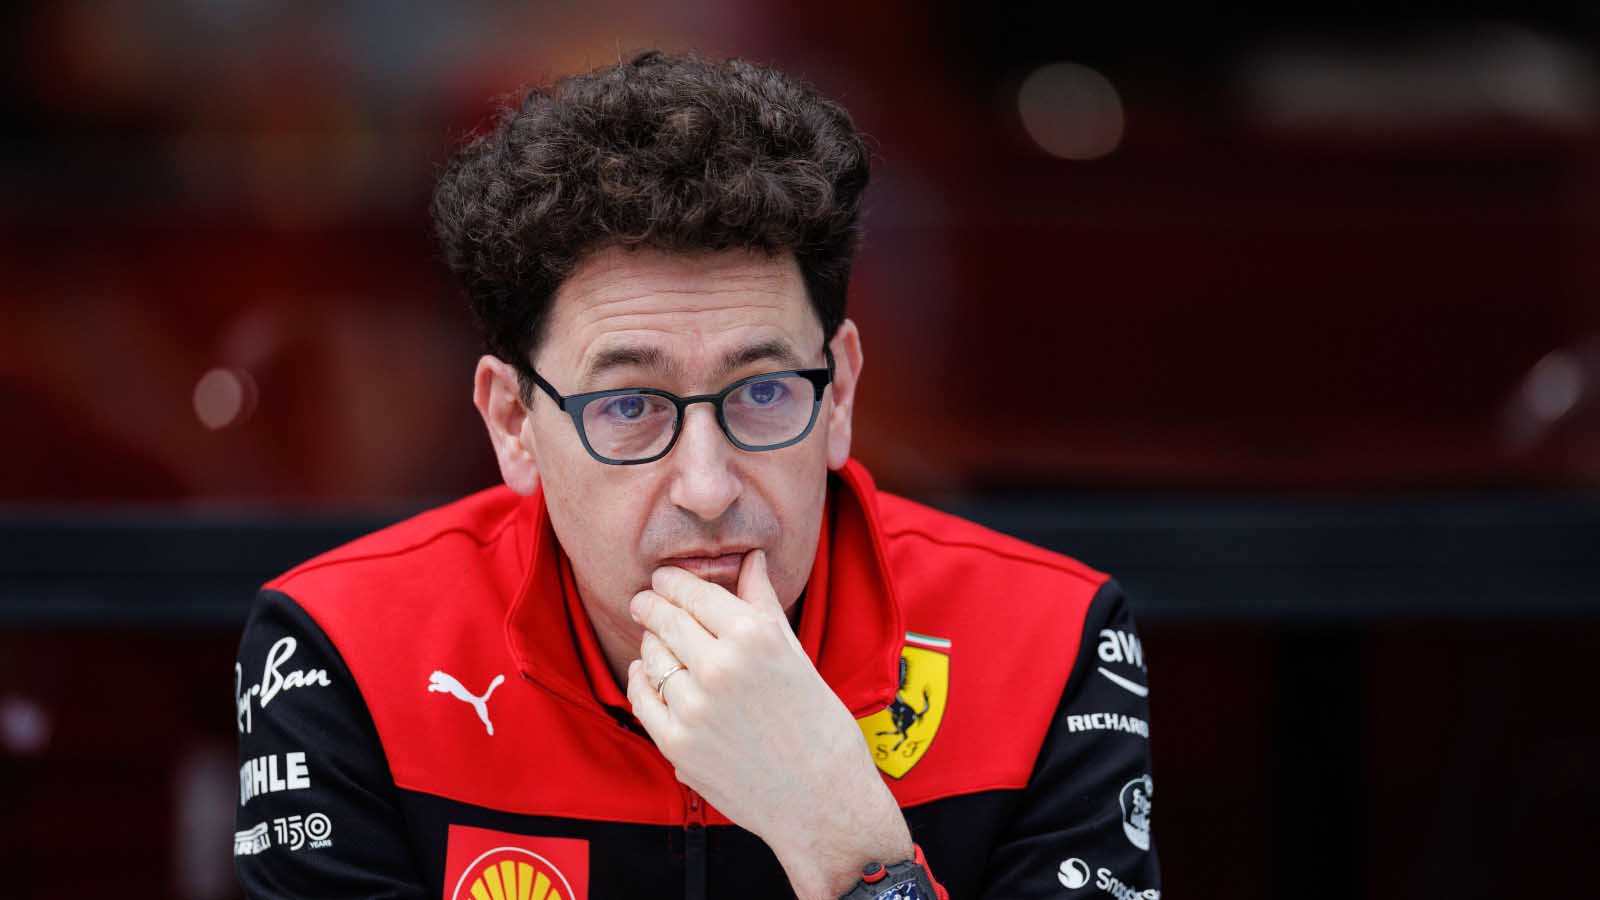 Τι συμβαίνει με τον Mattia Binotto; – Οι φήμες για παραίτηση του από την Ferrari